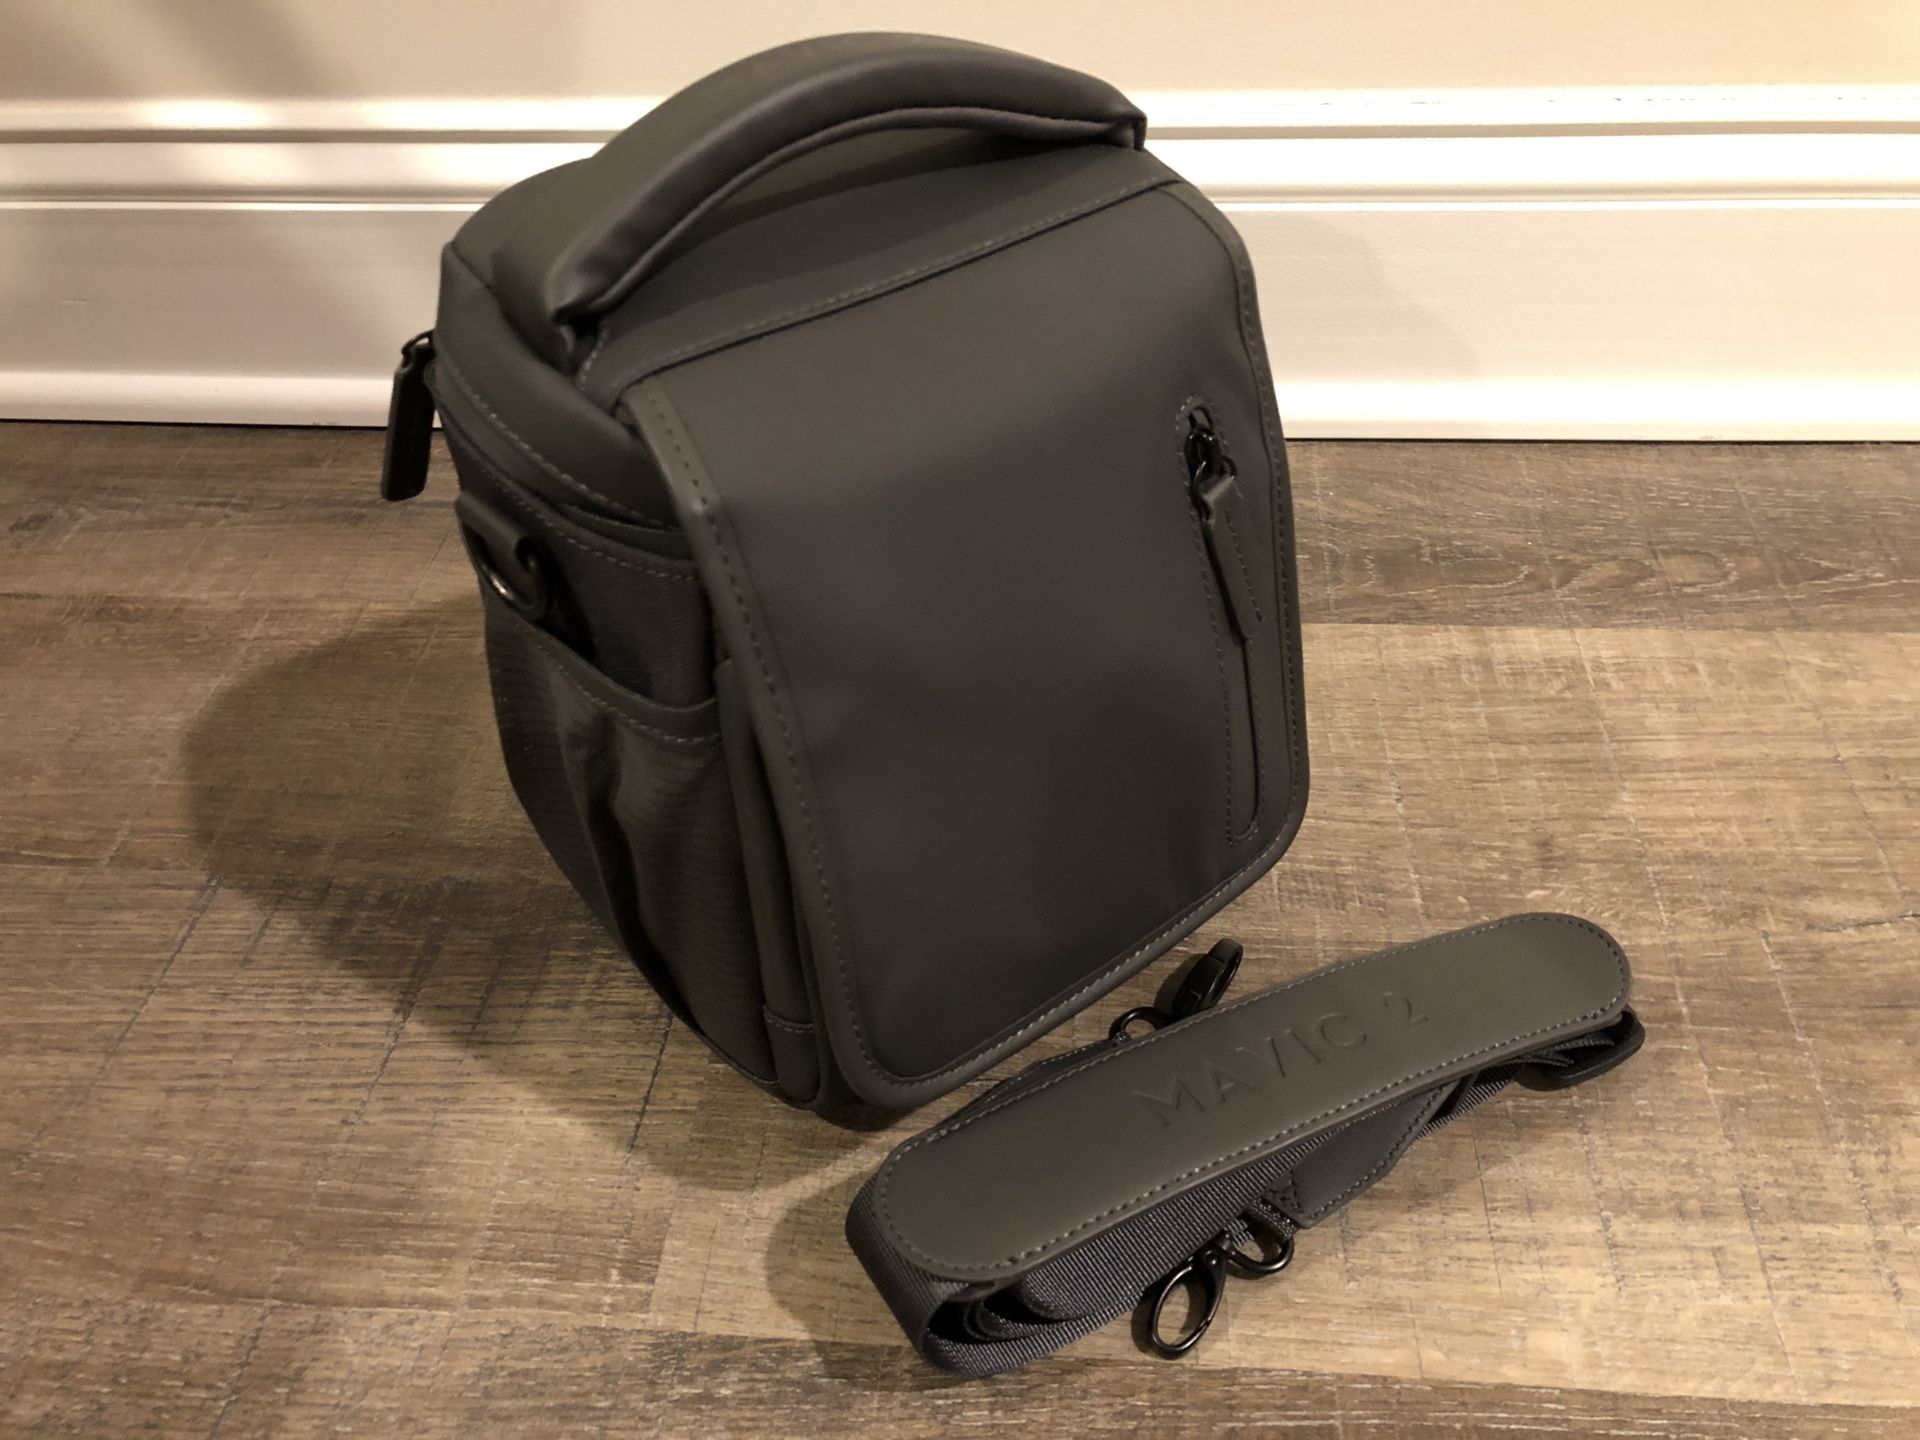 Genuine DJI Case/Bag with Shoulder Strap for DJI Mavic Pro 2/Zoom/Pro/Platinim